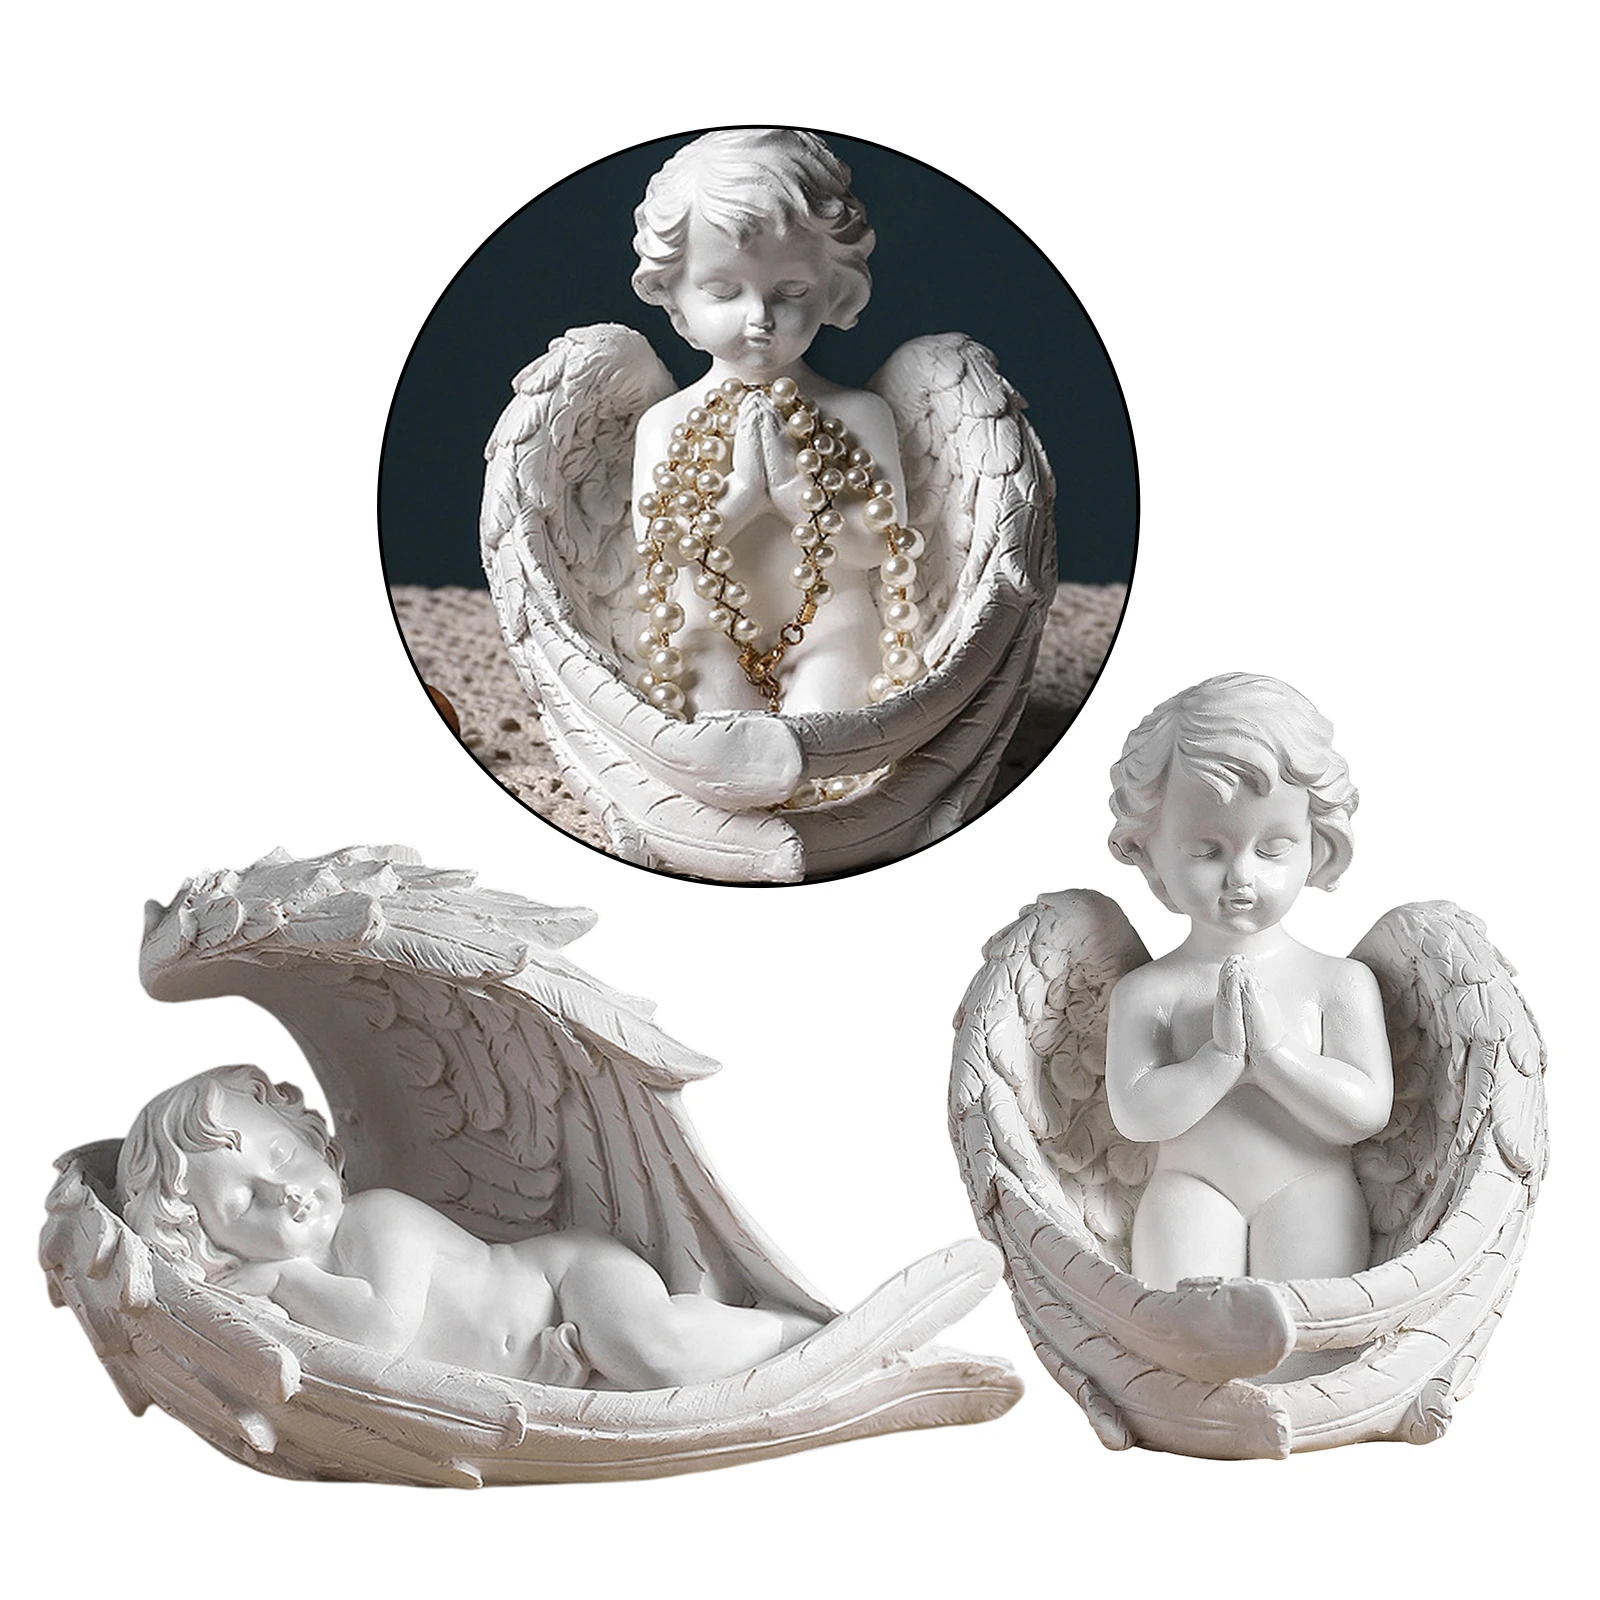 Baby Angel In Statue Figurine Home Decor Cherub Sculpture